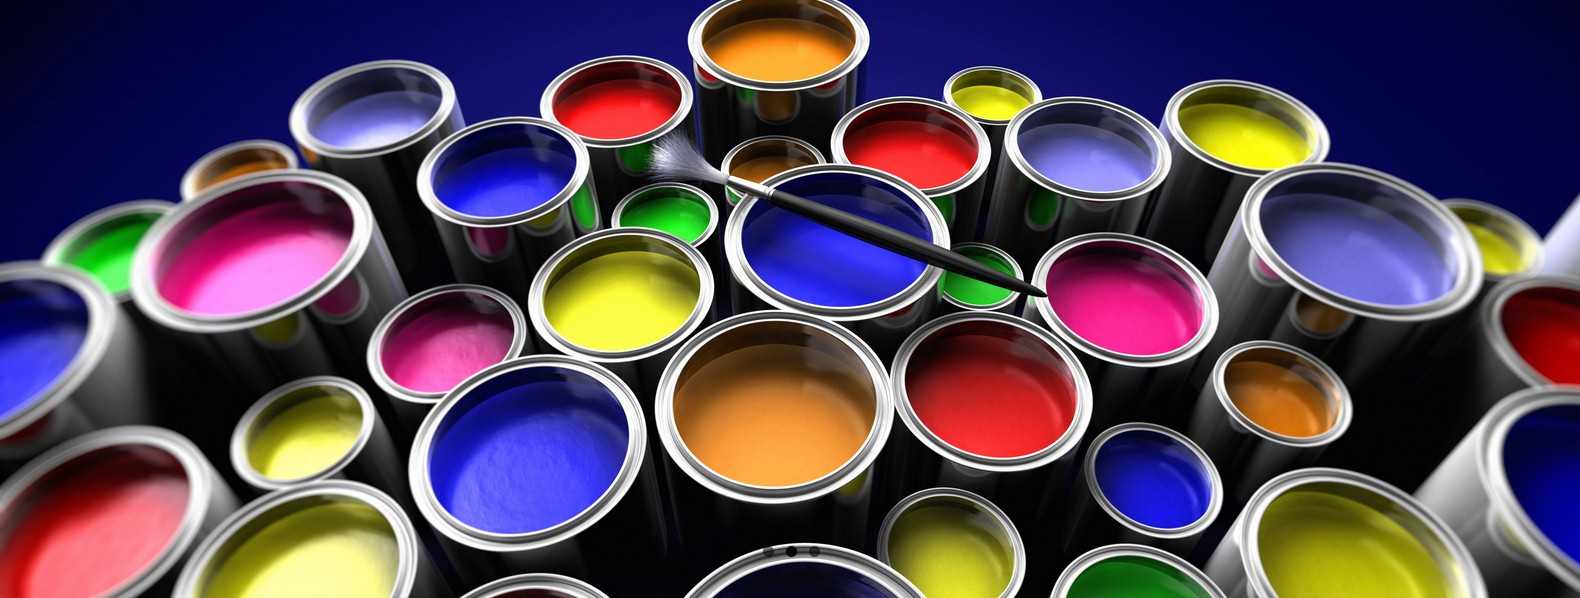 Пластиковая краска: достоинства полимерных составов, полезные советы